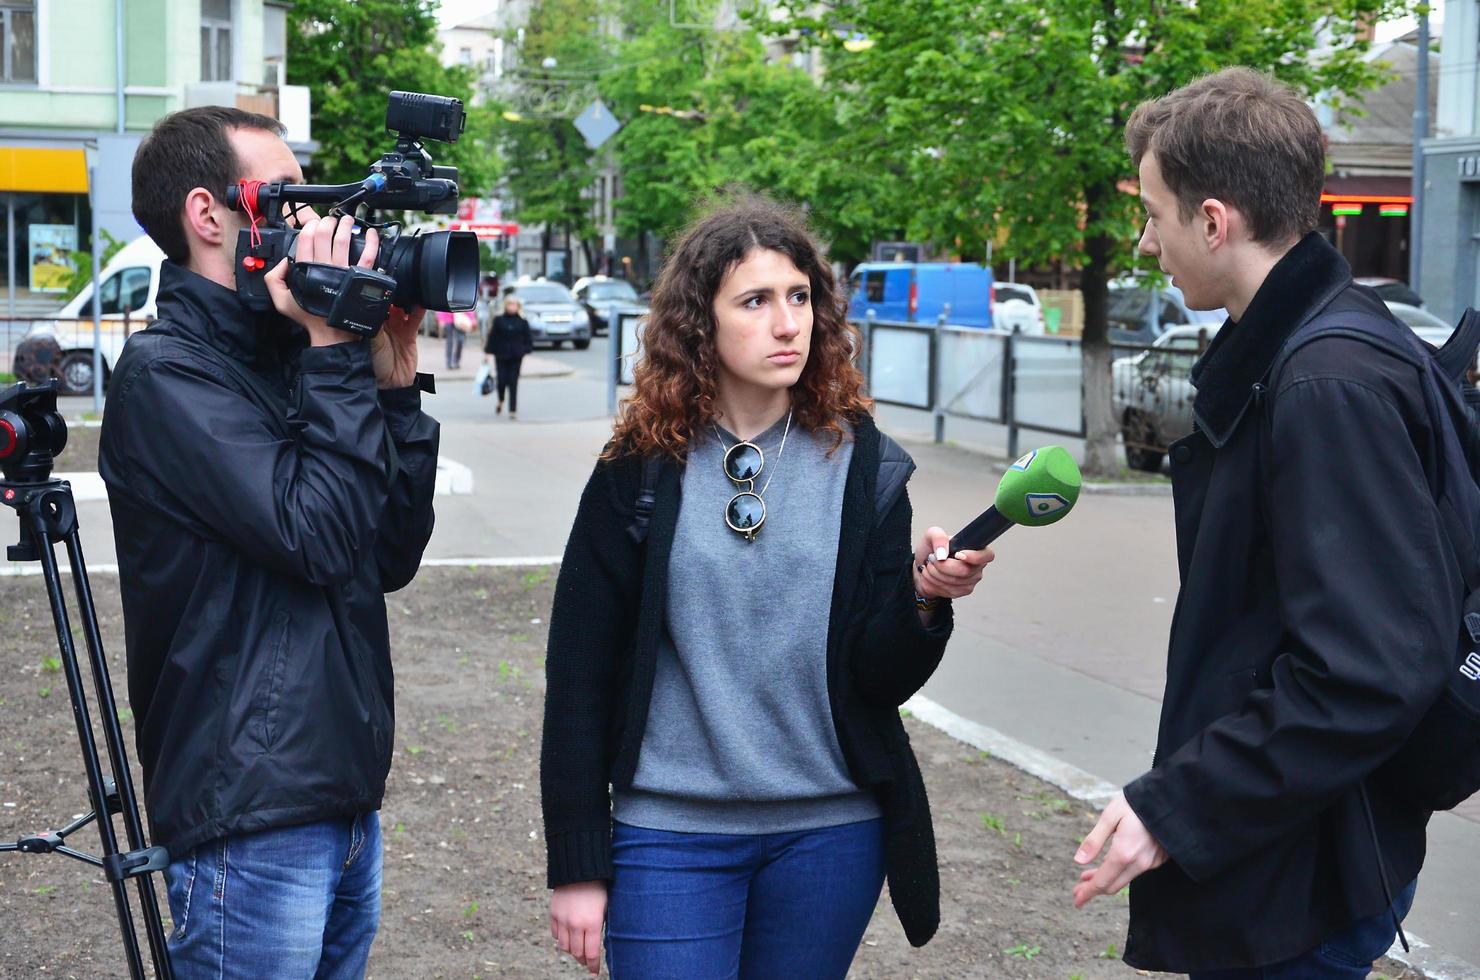 kharkov. ukraina - Maj 17, 2022 deltagarna av de först HBTQ verkan i kharkov ge intervjuer handla om ett oväntat ge sig på och störning av de händelse foto